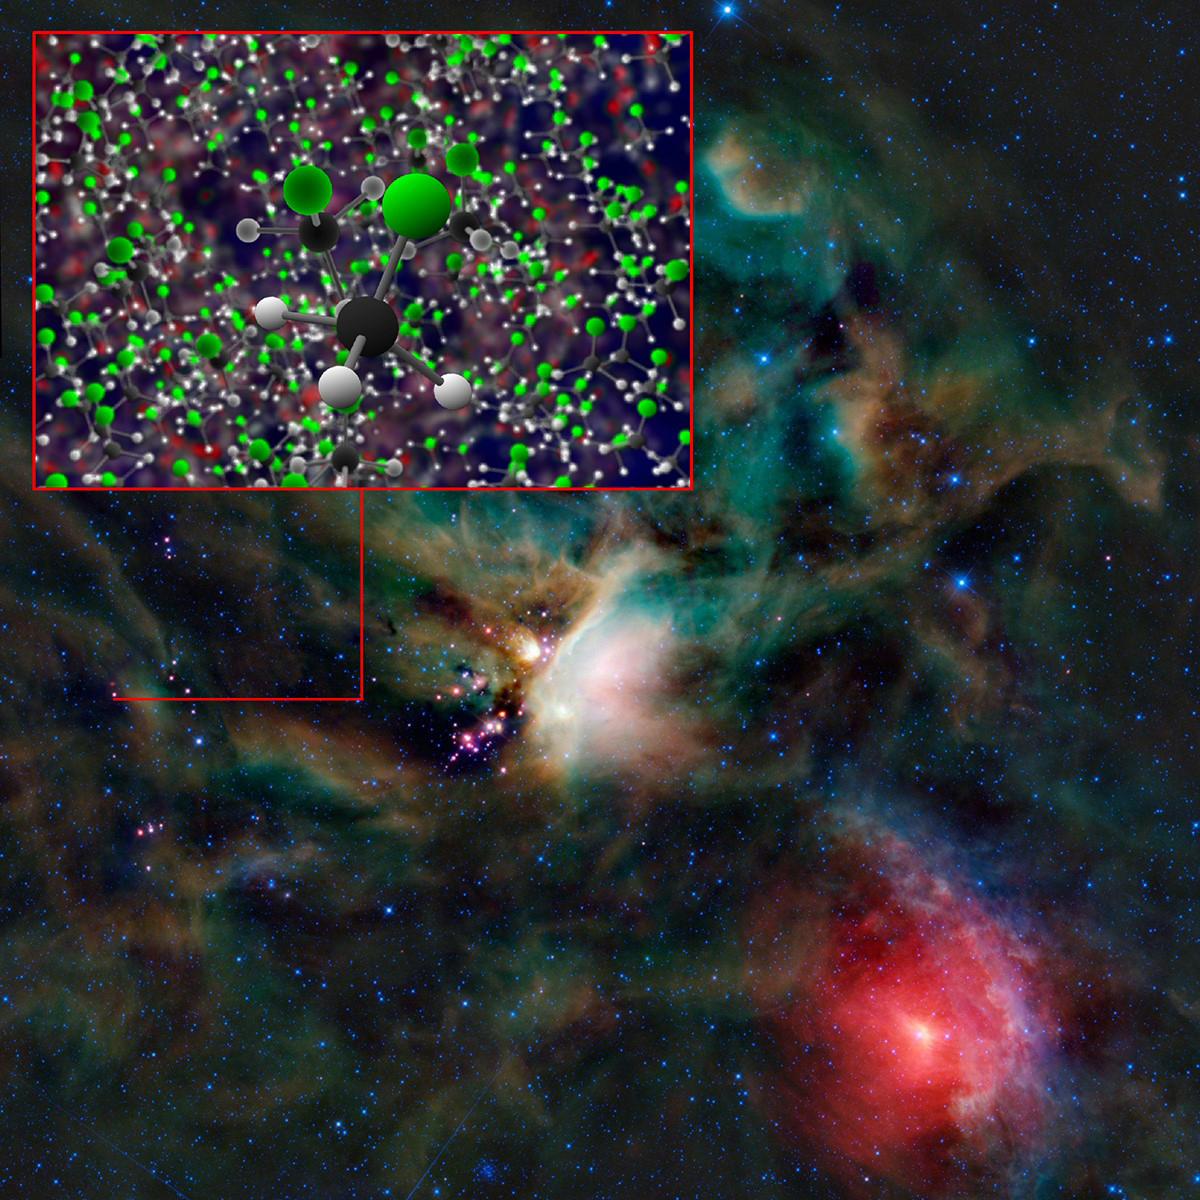 <p>El compuesto organohalogenado clorometano descubierto por ALMA alrededor de estrellas jóvenes en IRAS 16293-2422. Se encontraron los mismos compuestos orgánicos en la delgada atmósfera de 67P/C-G usando la sonda espacial Rosetta. Créditos: B. Saxton (NRAO/AUI/NSF).</p>
